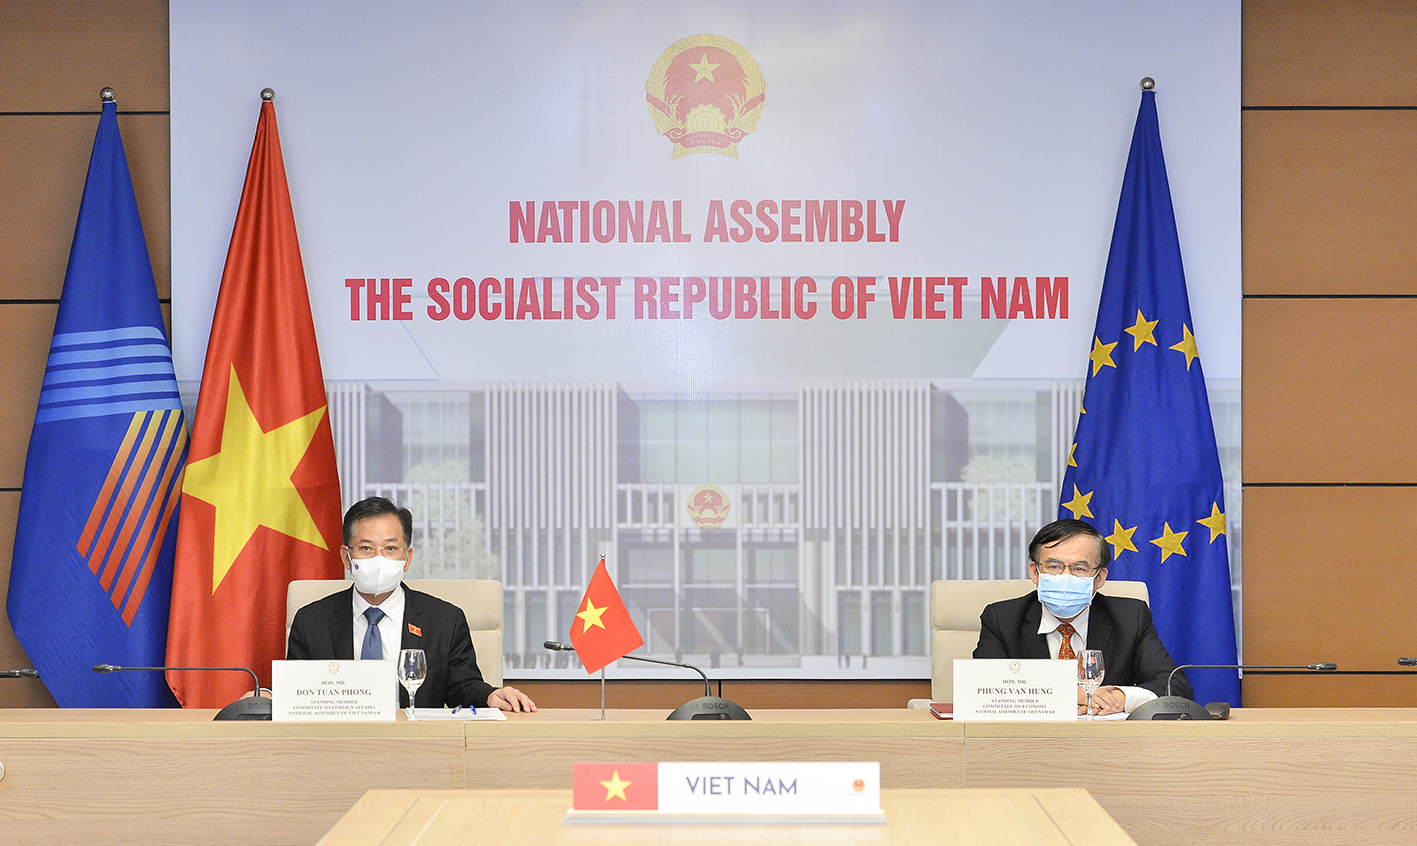 Ủy viên Thường trực Ủy ban Đối ngoại Đôn Tuấn Phong và Ủy viên thường trực Ủy ban Kinh tế Phùng Văn Hùng đại diện cho Quốc hội Việt Nam dự phiên đối thoại